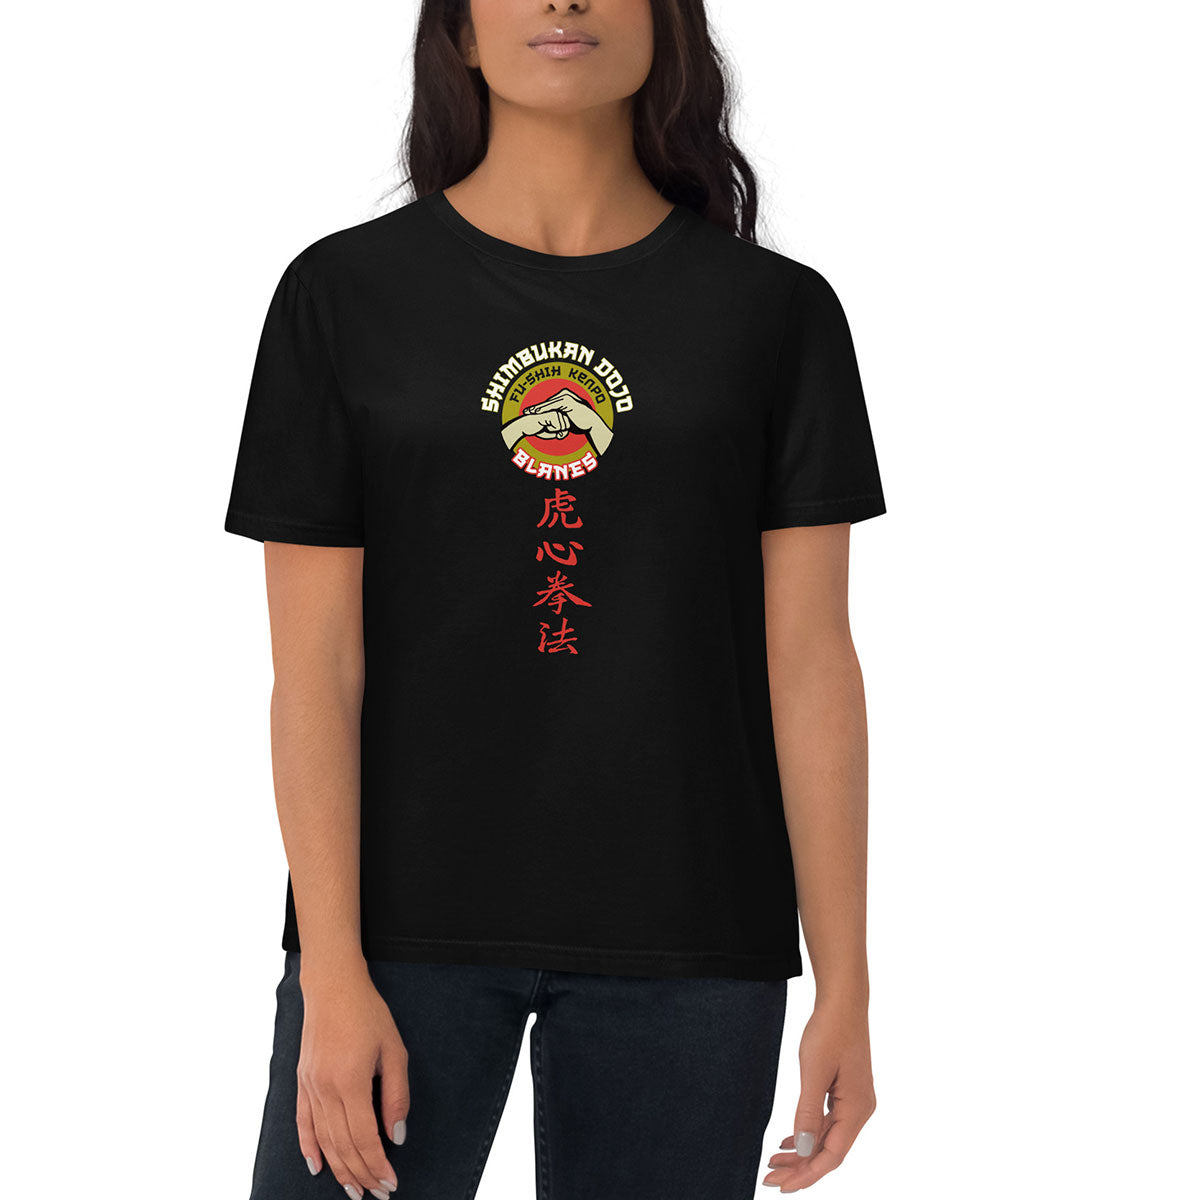 SHIMBUKAN DOJO · Camiseta m/corta·Mujer/Unisex · Medium·Black-294c2f